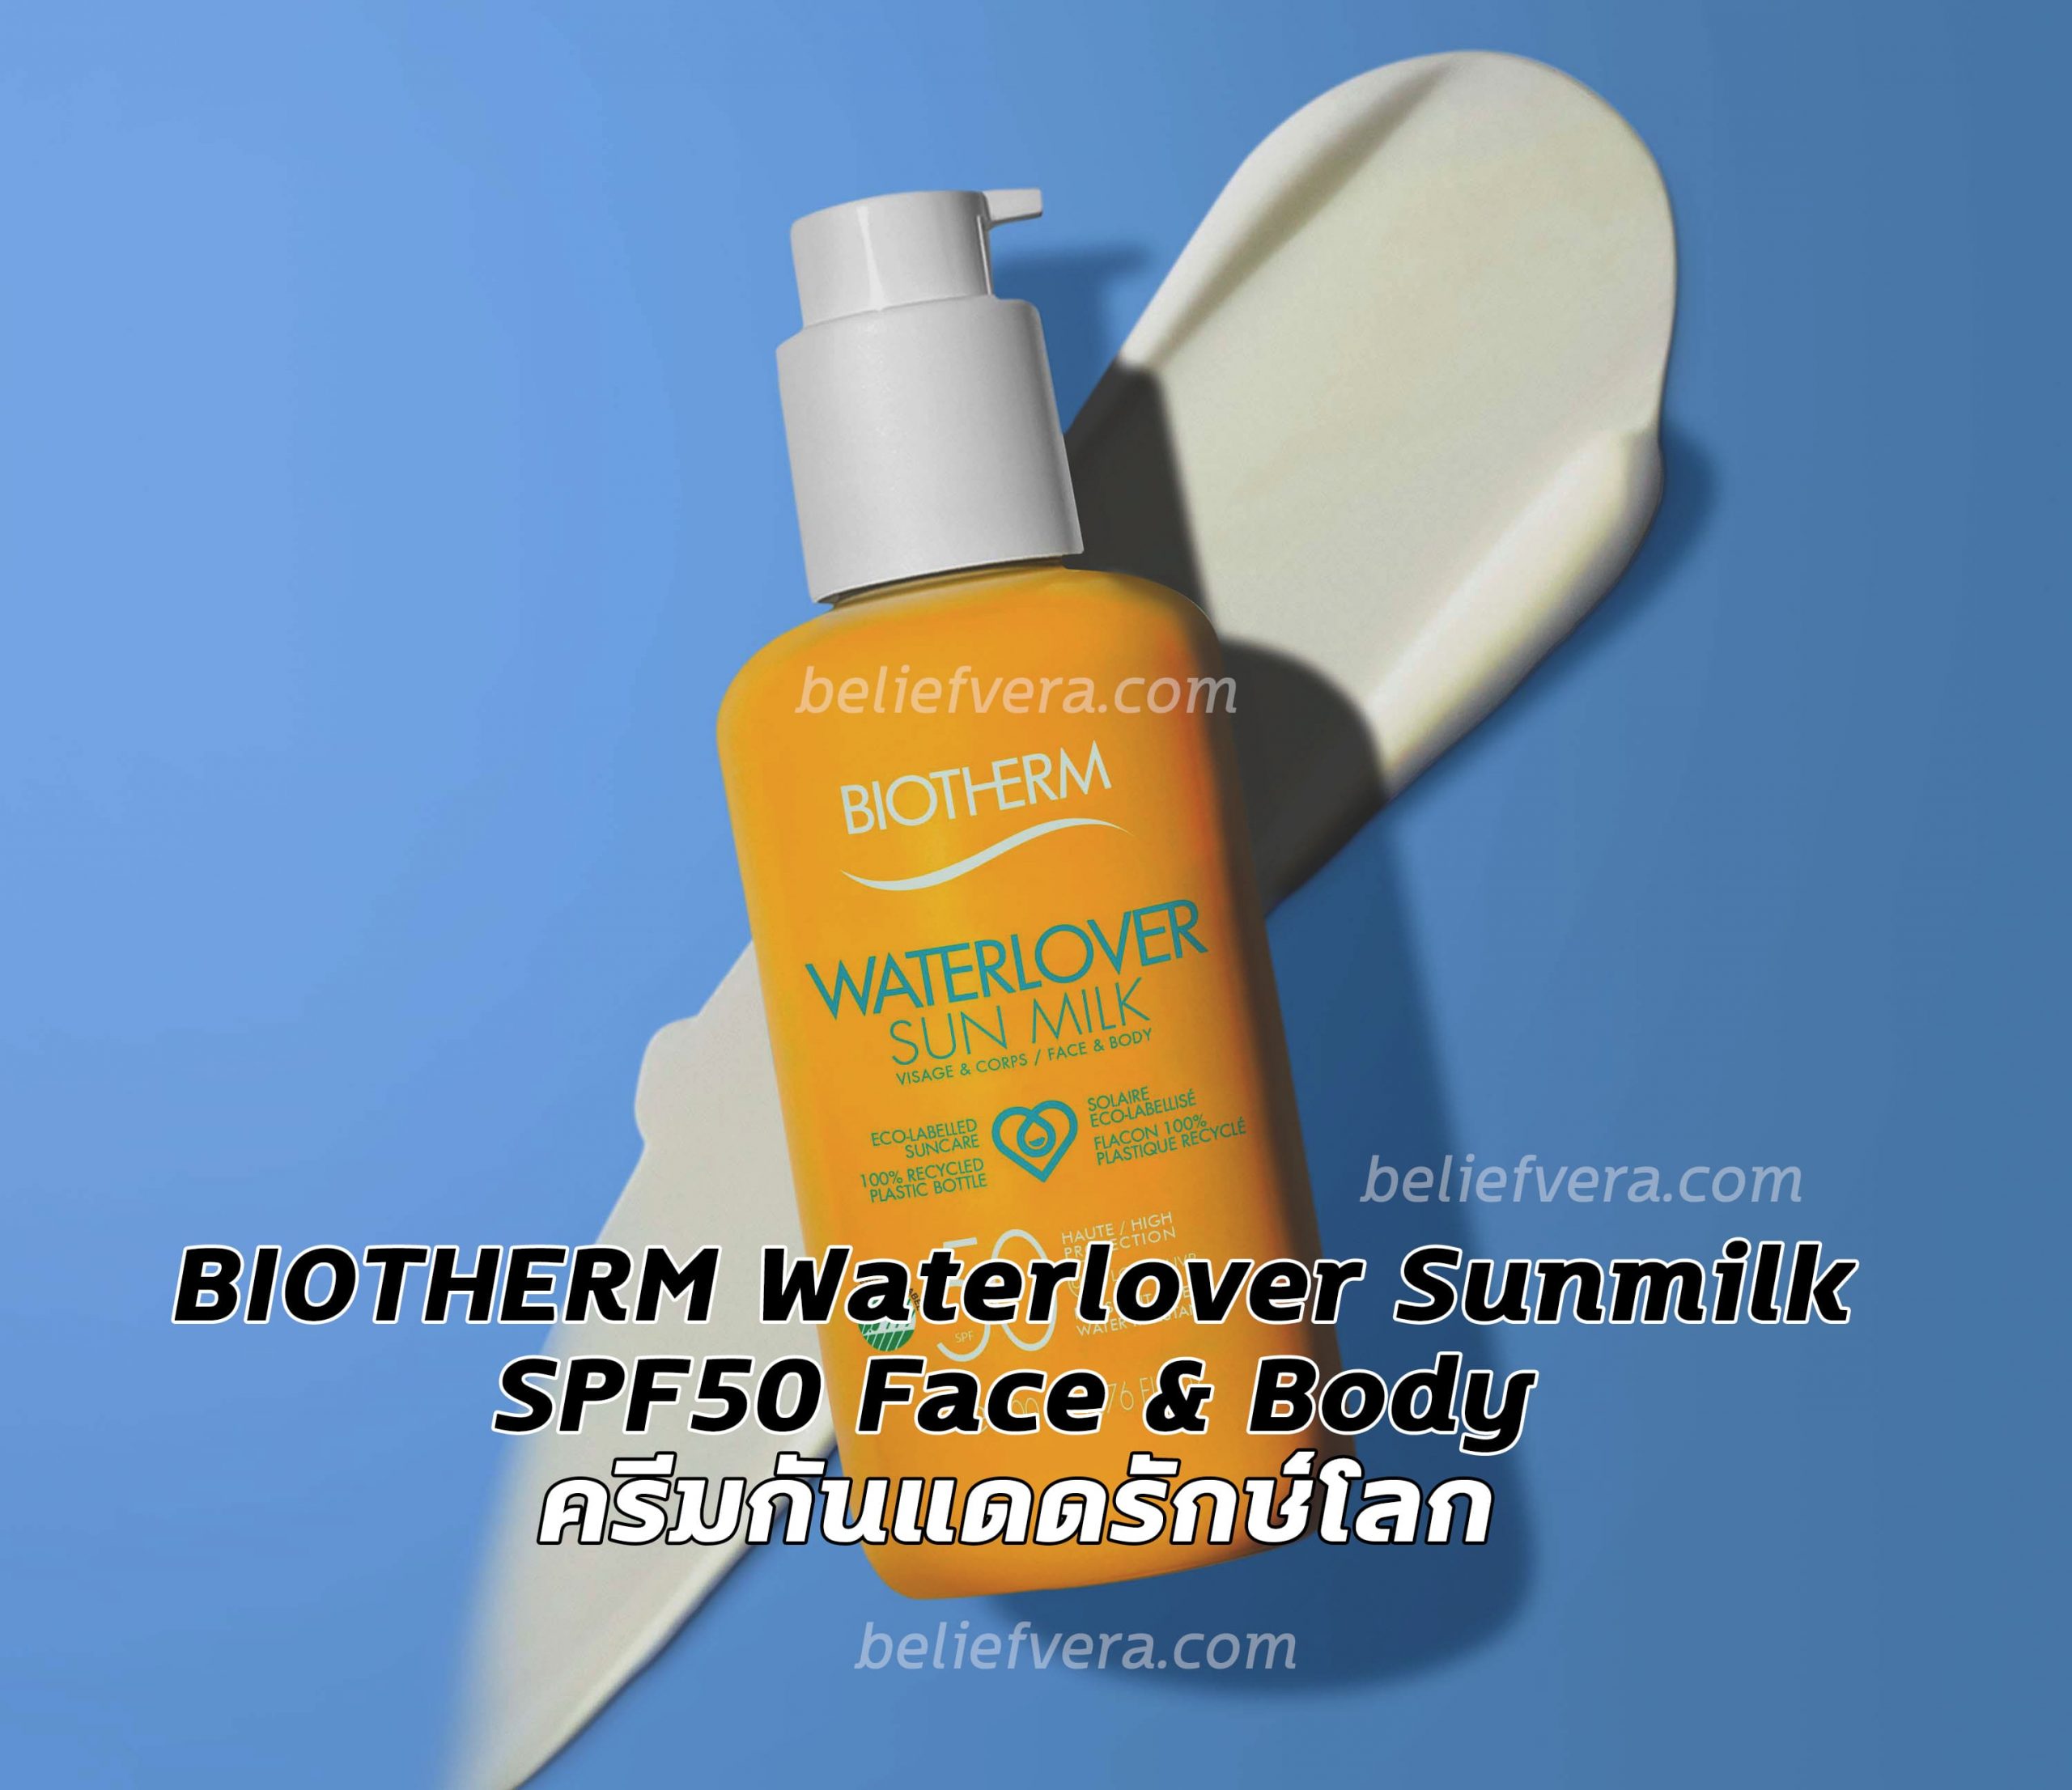 BIOTHERM Waterlover Sunmilk SPF50 Face & Body